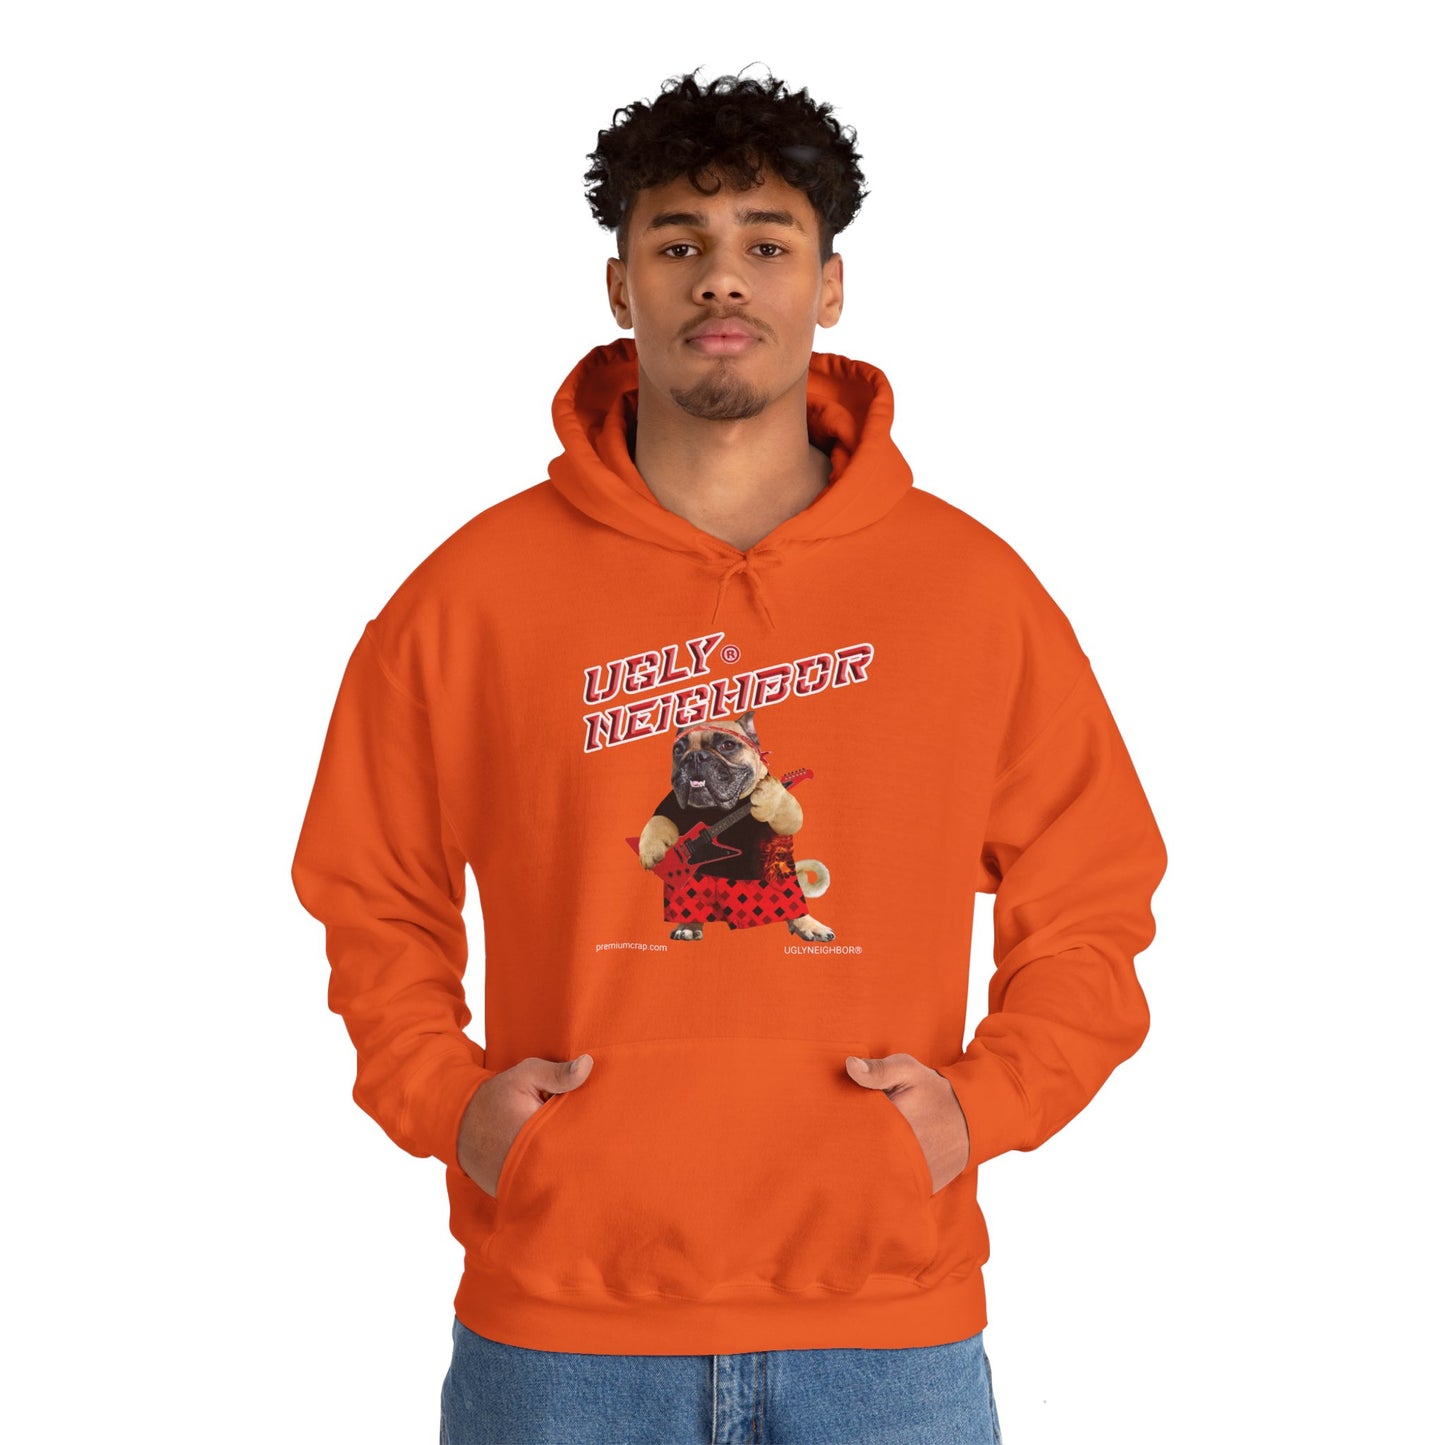 Ugly Neighbor II Heavy Blend Hooded Sweatshirt